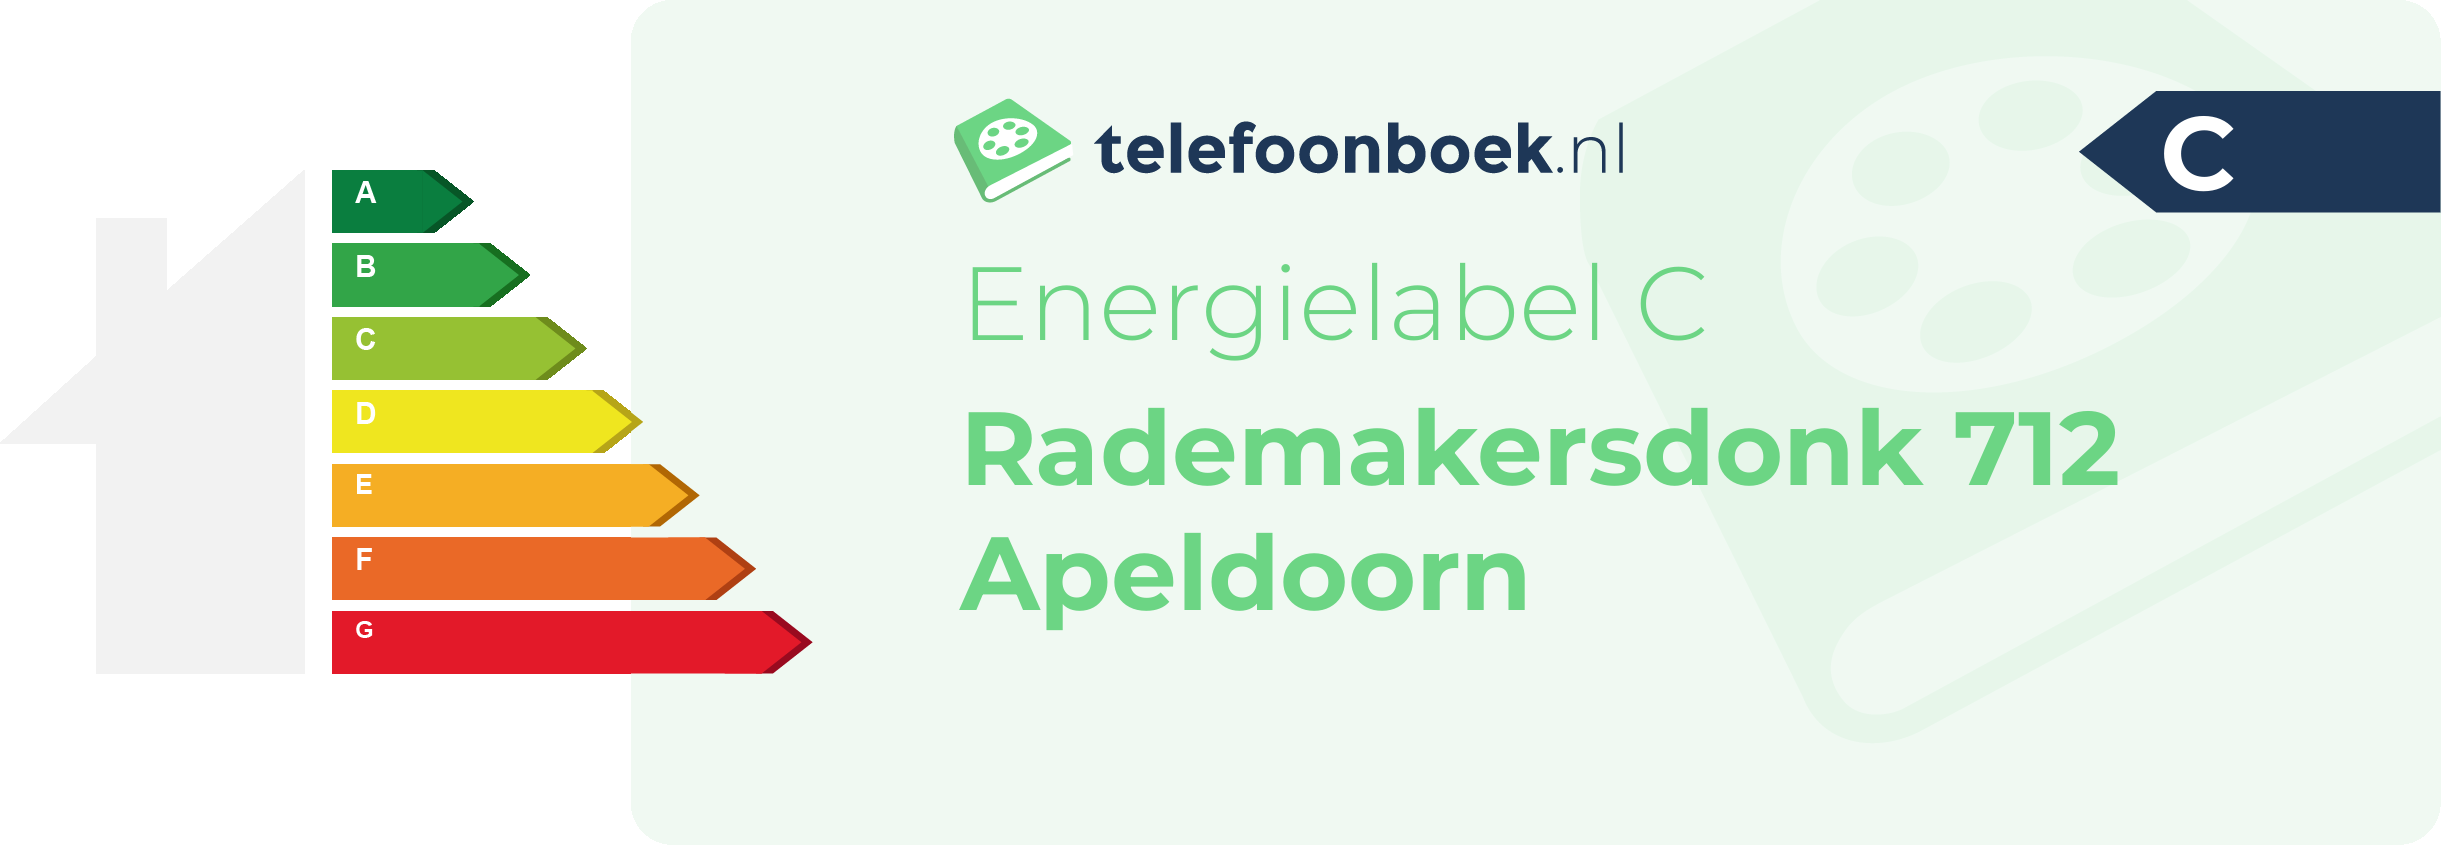 Energielabel Rademakersdonk 712 Apeldoorn